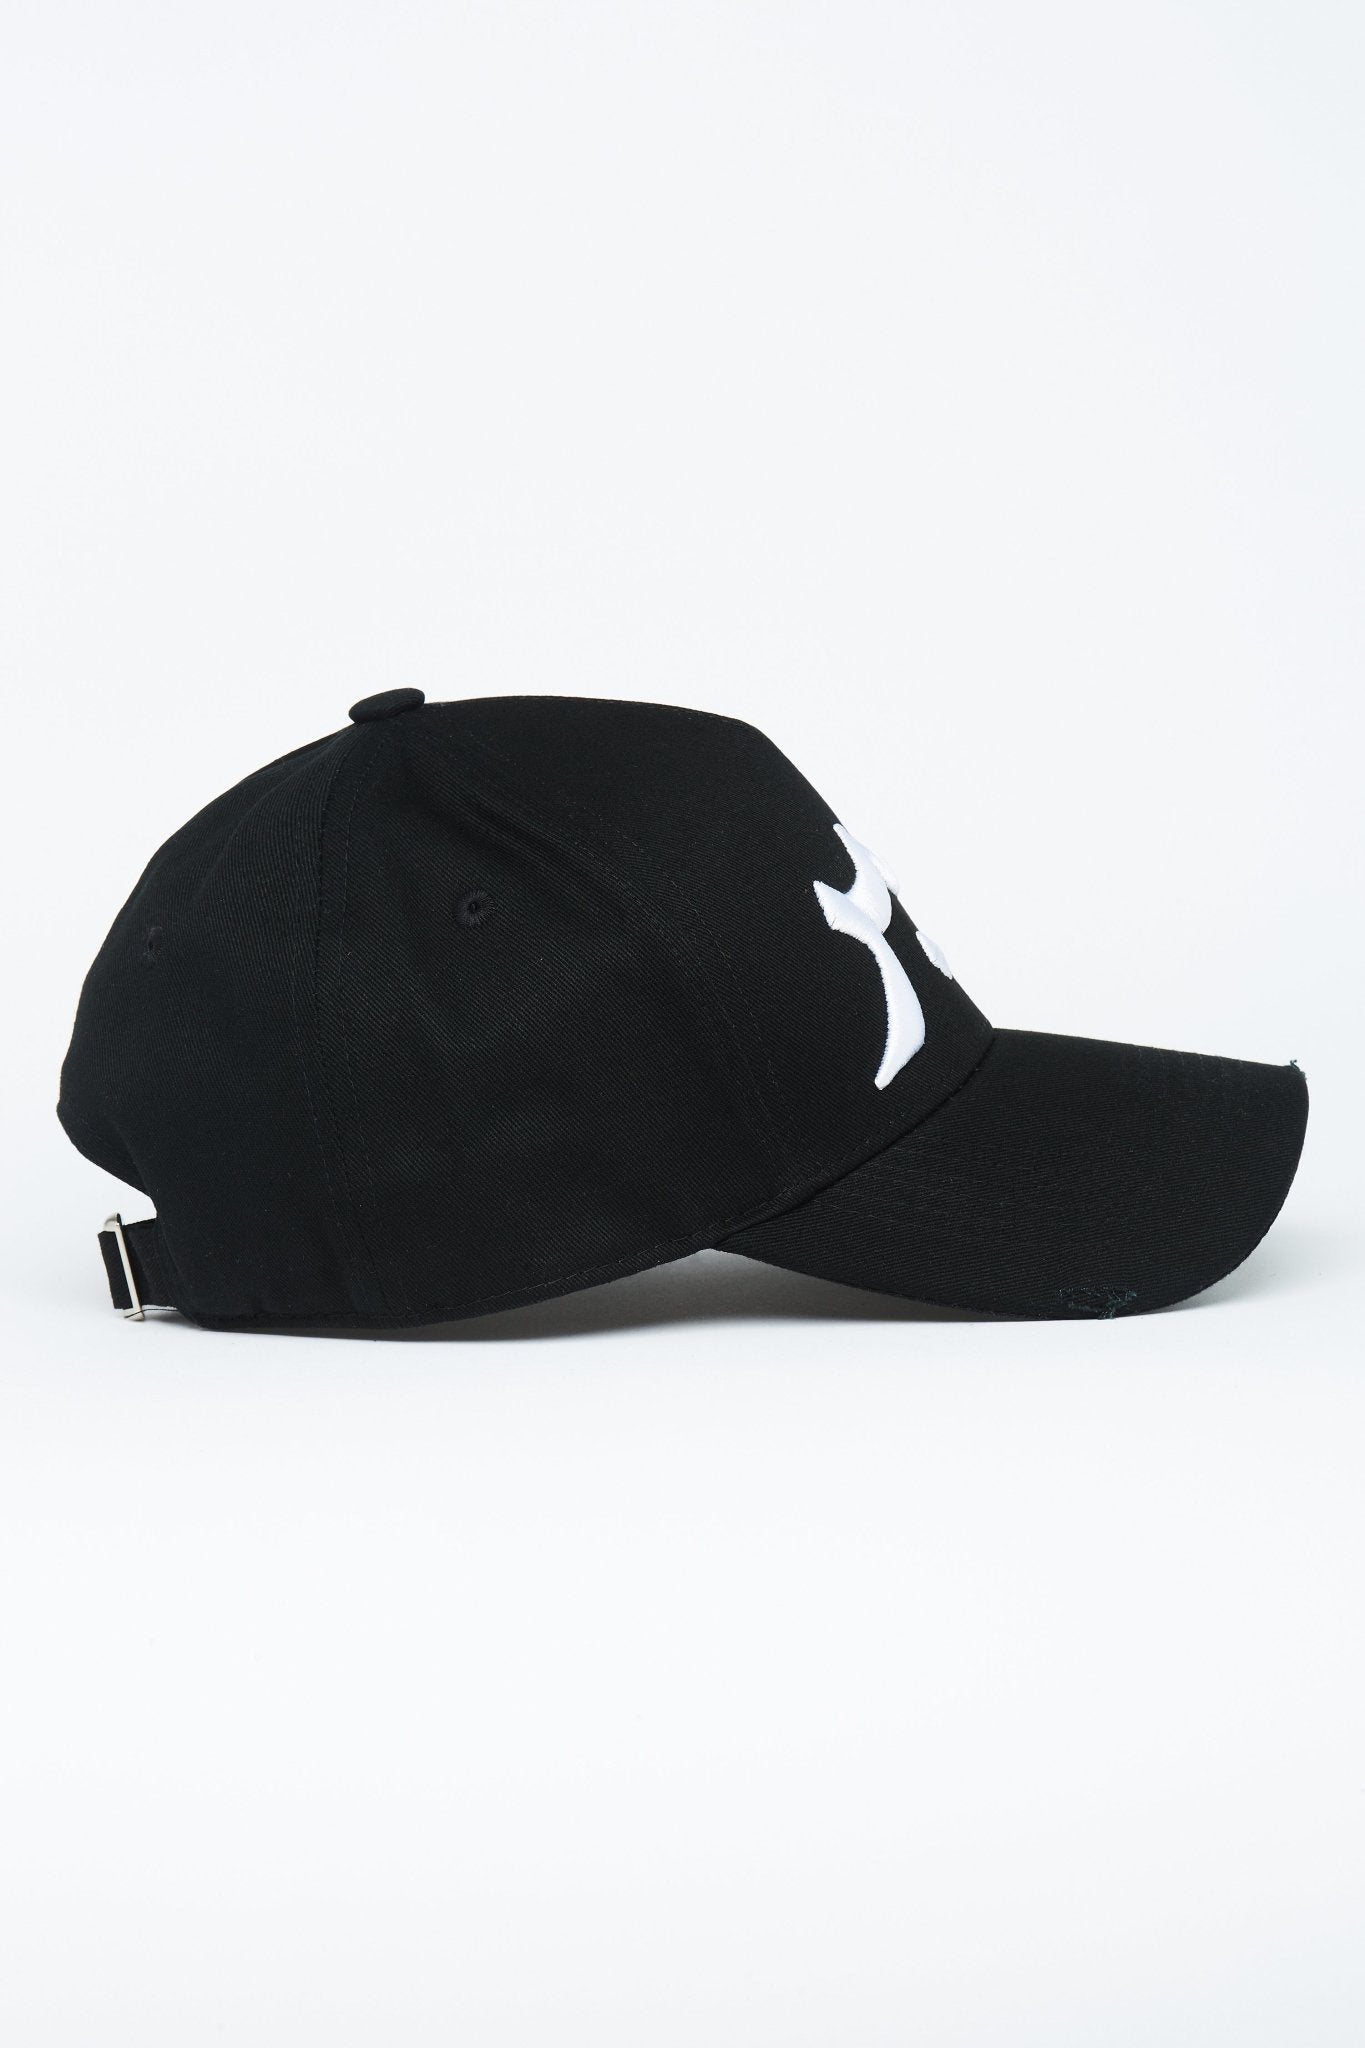 Black & White Patience Arabic Cap - CAVE